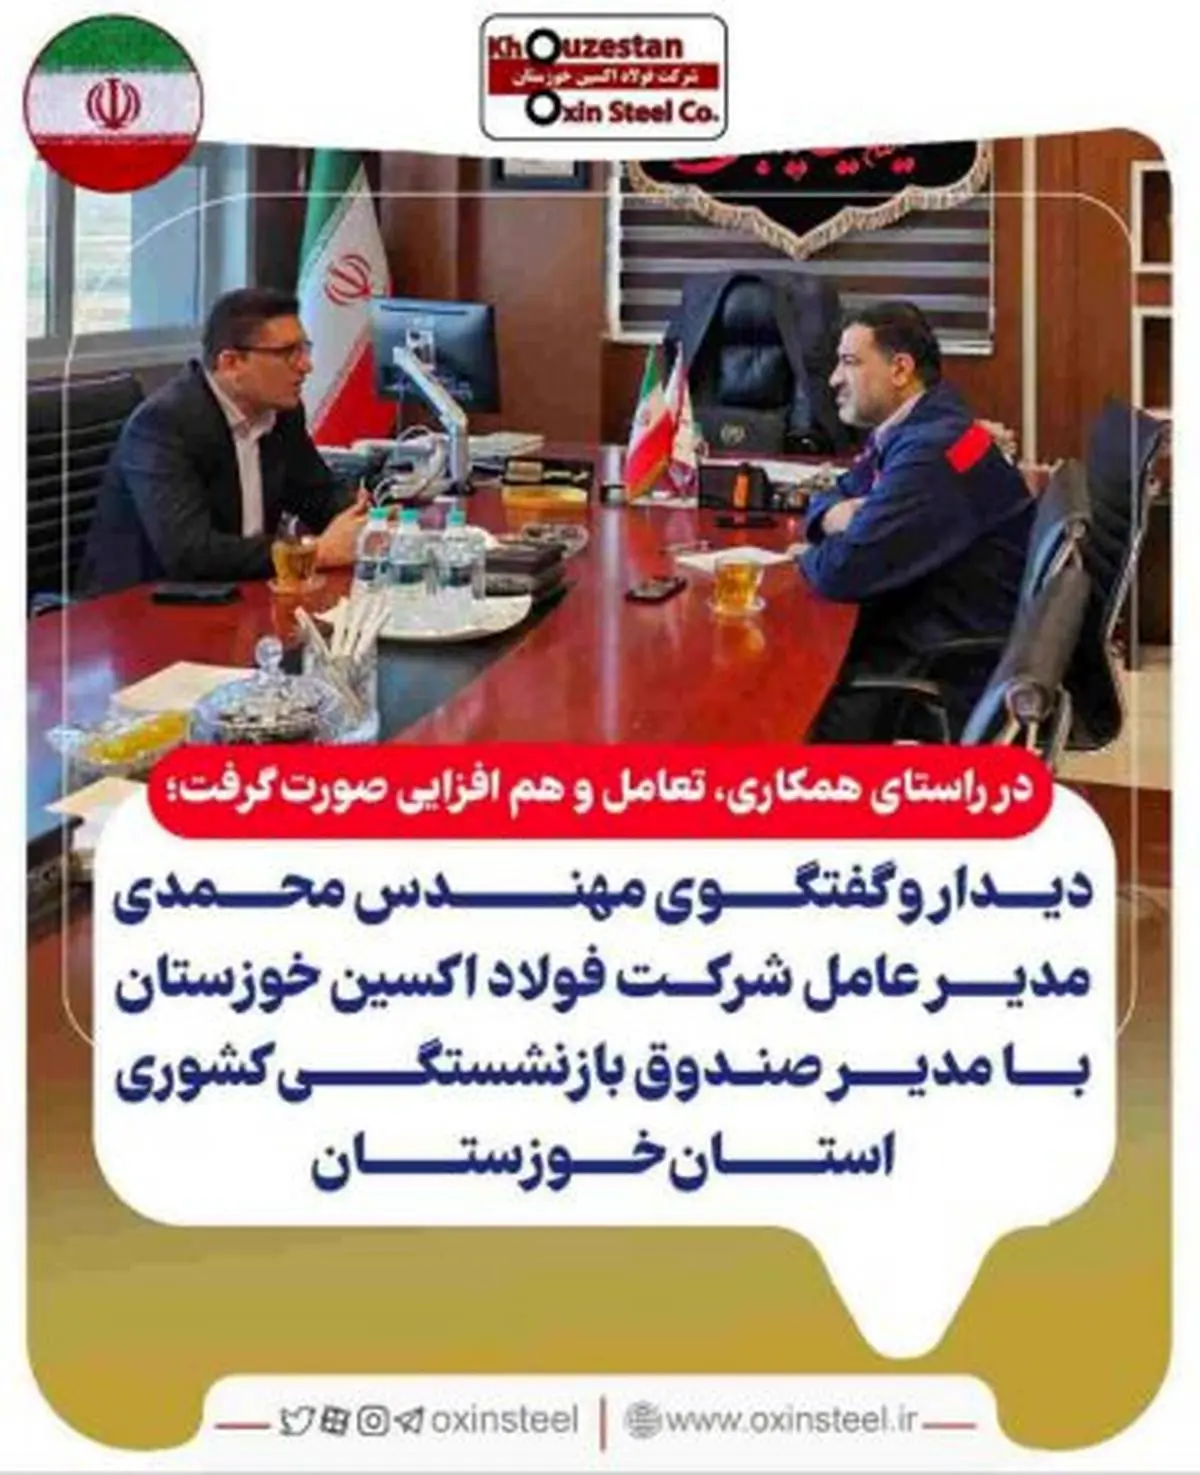 دیدار و گفتگوی مهندس محمدی مدیر عامل شرکت فولاد اکسین خوزستان با مدیر صندوق بازنشستگی کشوری استان خوزستان
